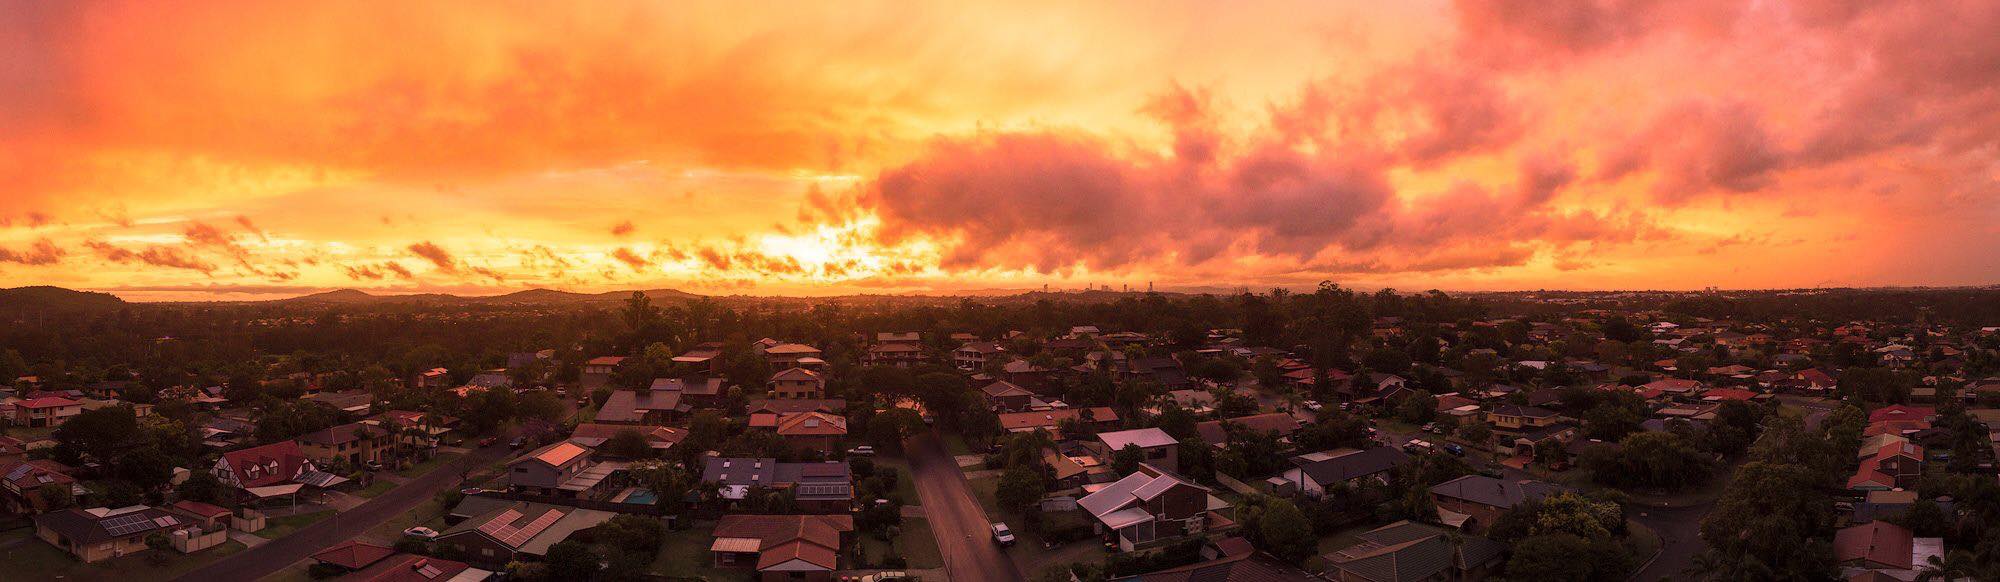 SEQ sunset via a drone captured by Shane Davac